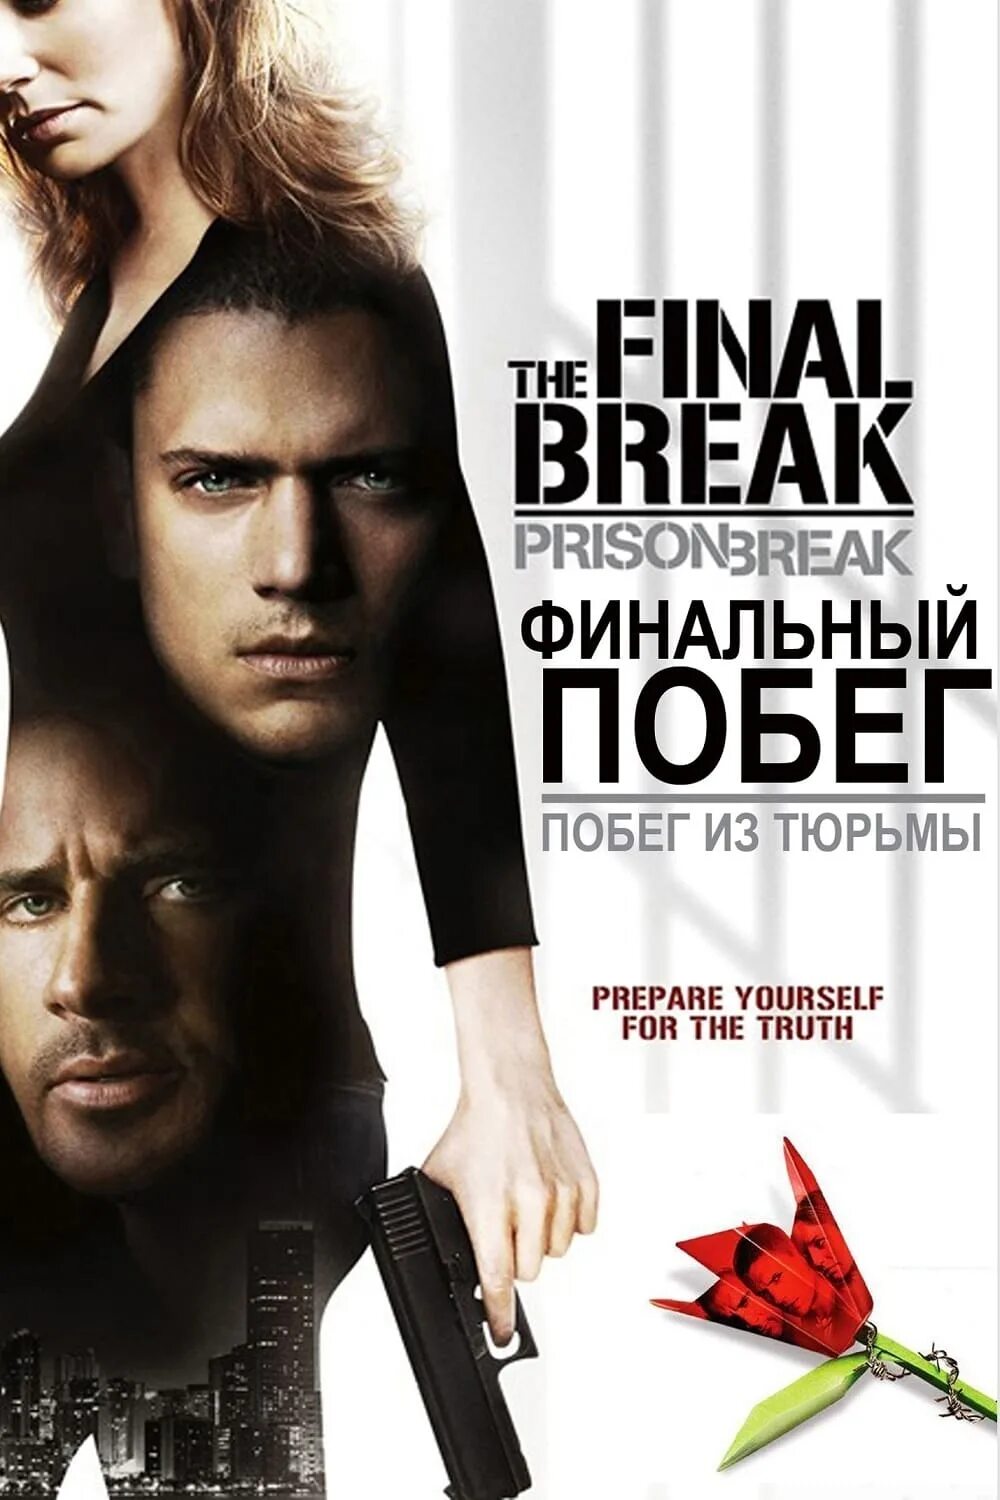 Final break. Побег из тюрьмы: финальный побег (2009, США).